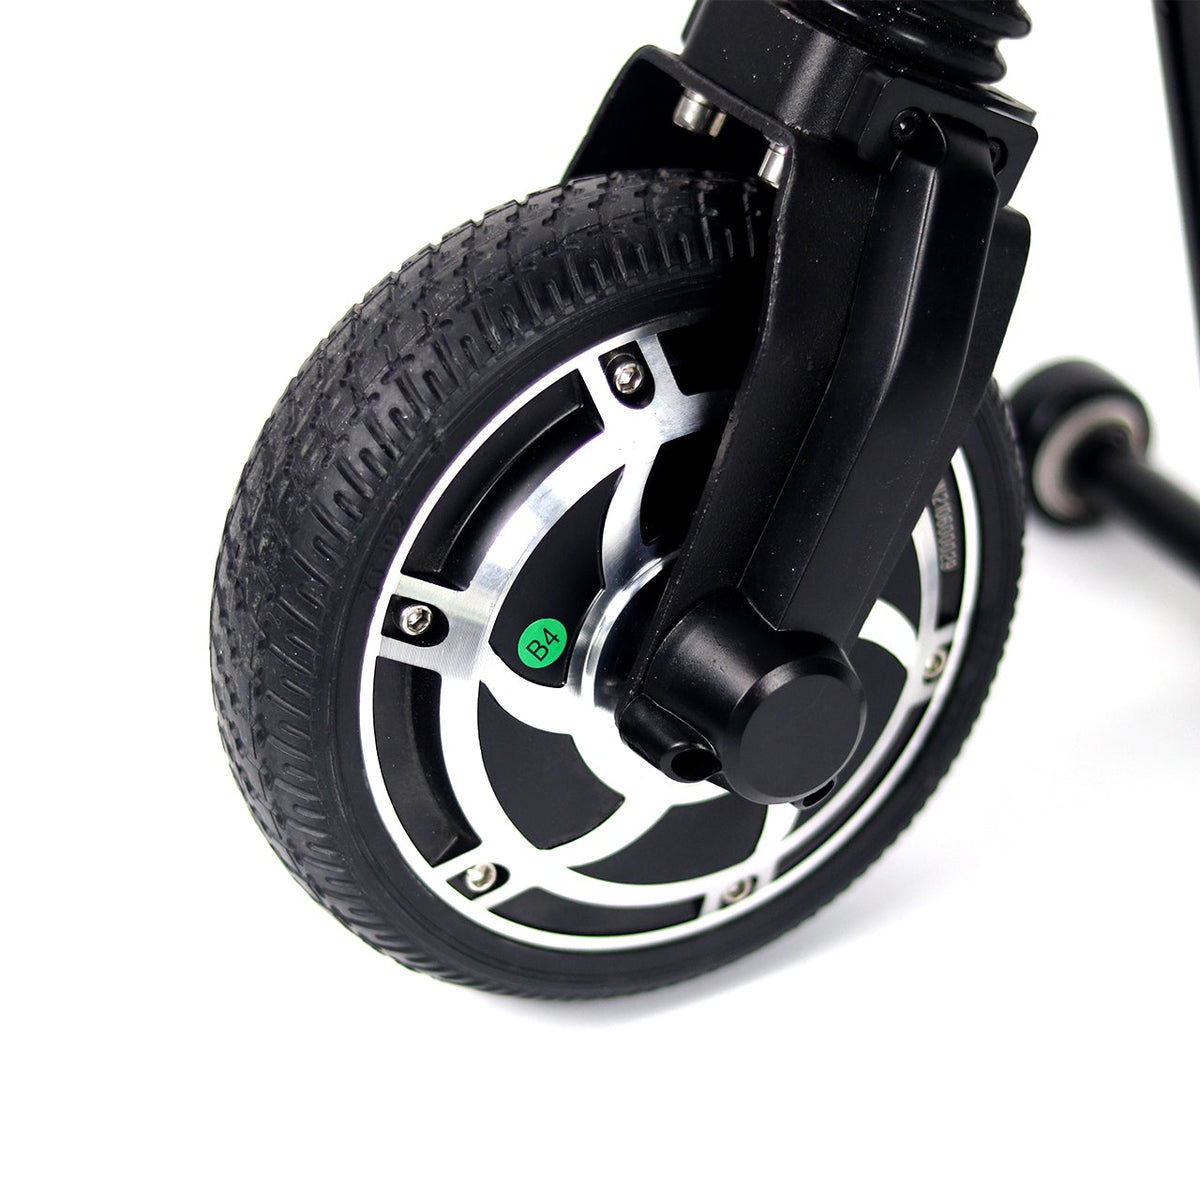 Компактный электрический ручной бак для ручных инвалидных колясок